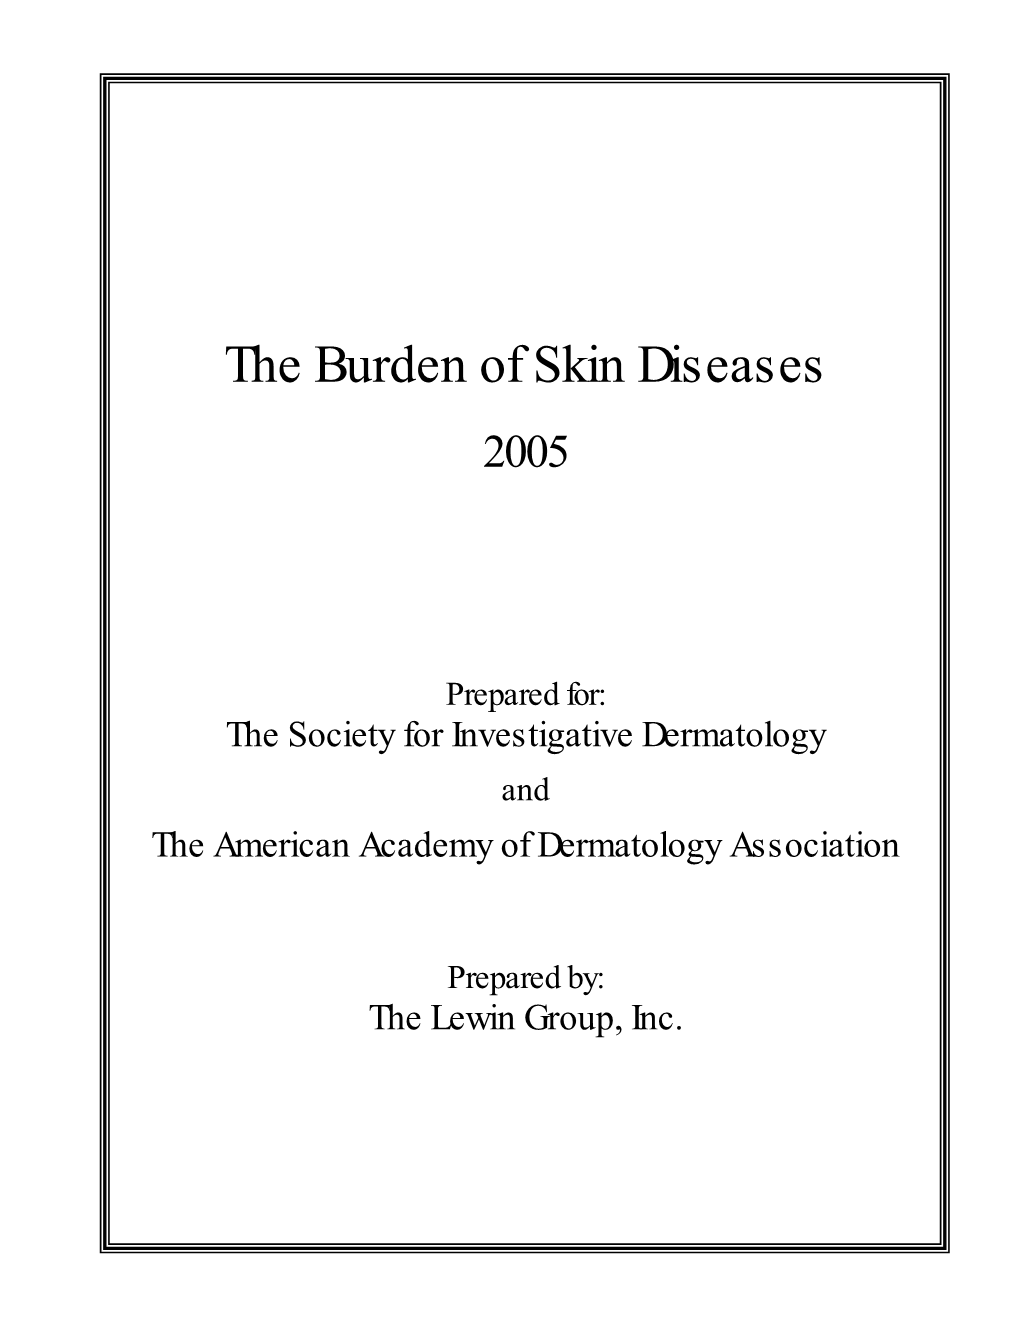 The Burden of Skin Diseases 2005